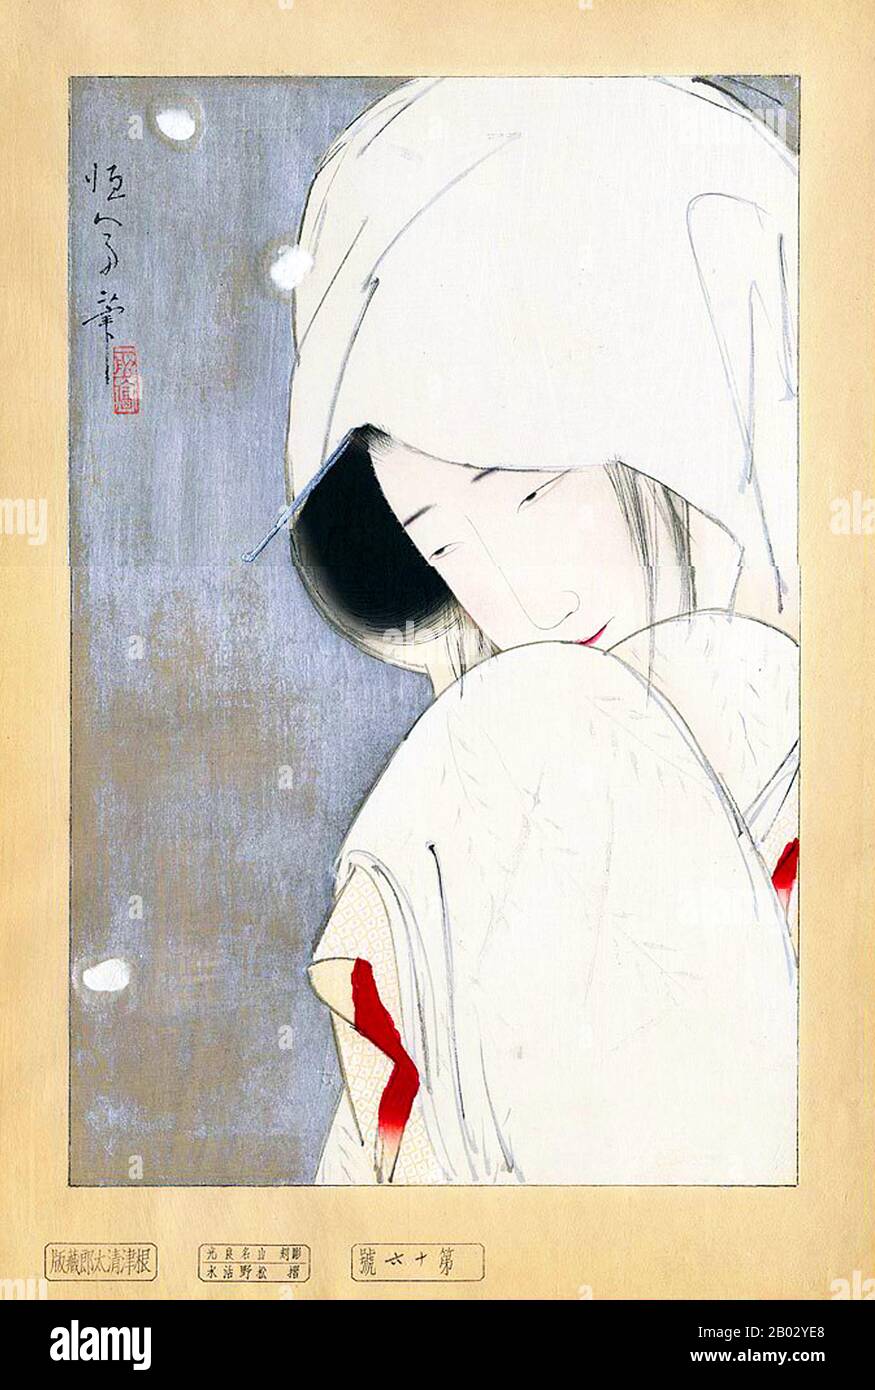 Kitano Tsunetomi era un noto pittore e tipografo bijin-ga. Le sue stampe in legno hanno una qualità pittorica, e hanno un aspetto molto simile ai dipinti a chiocciola su cui erano basate. Nel 1880 nacque a Kanazawa con il nome di Tomitaro. Come giovane, Tsunetomi lavorò come apprendista ad un falegname dopo il quale divenne un falegname per il giornale Soku Shinpo. Successivamente si trasferì ad Osaka per studiare la pittura in stile nihon-ga sotto Inano Toshitsune, uno studente di Yoshiitoshi. Nel 1901 iniziò a lavorare come illustratore per il giornale Osaka Shinbun. A partire dal 1910, Tsunetomi b Foto Stock